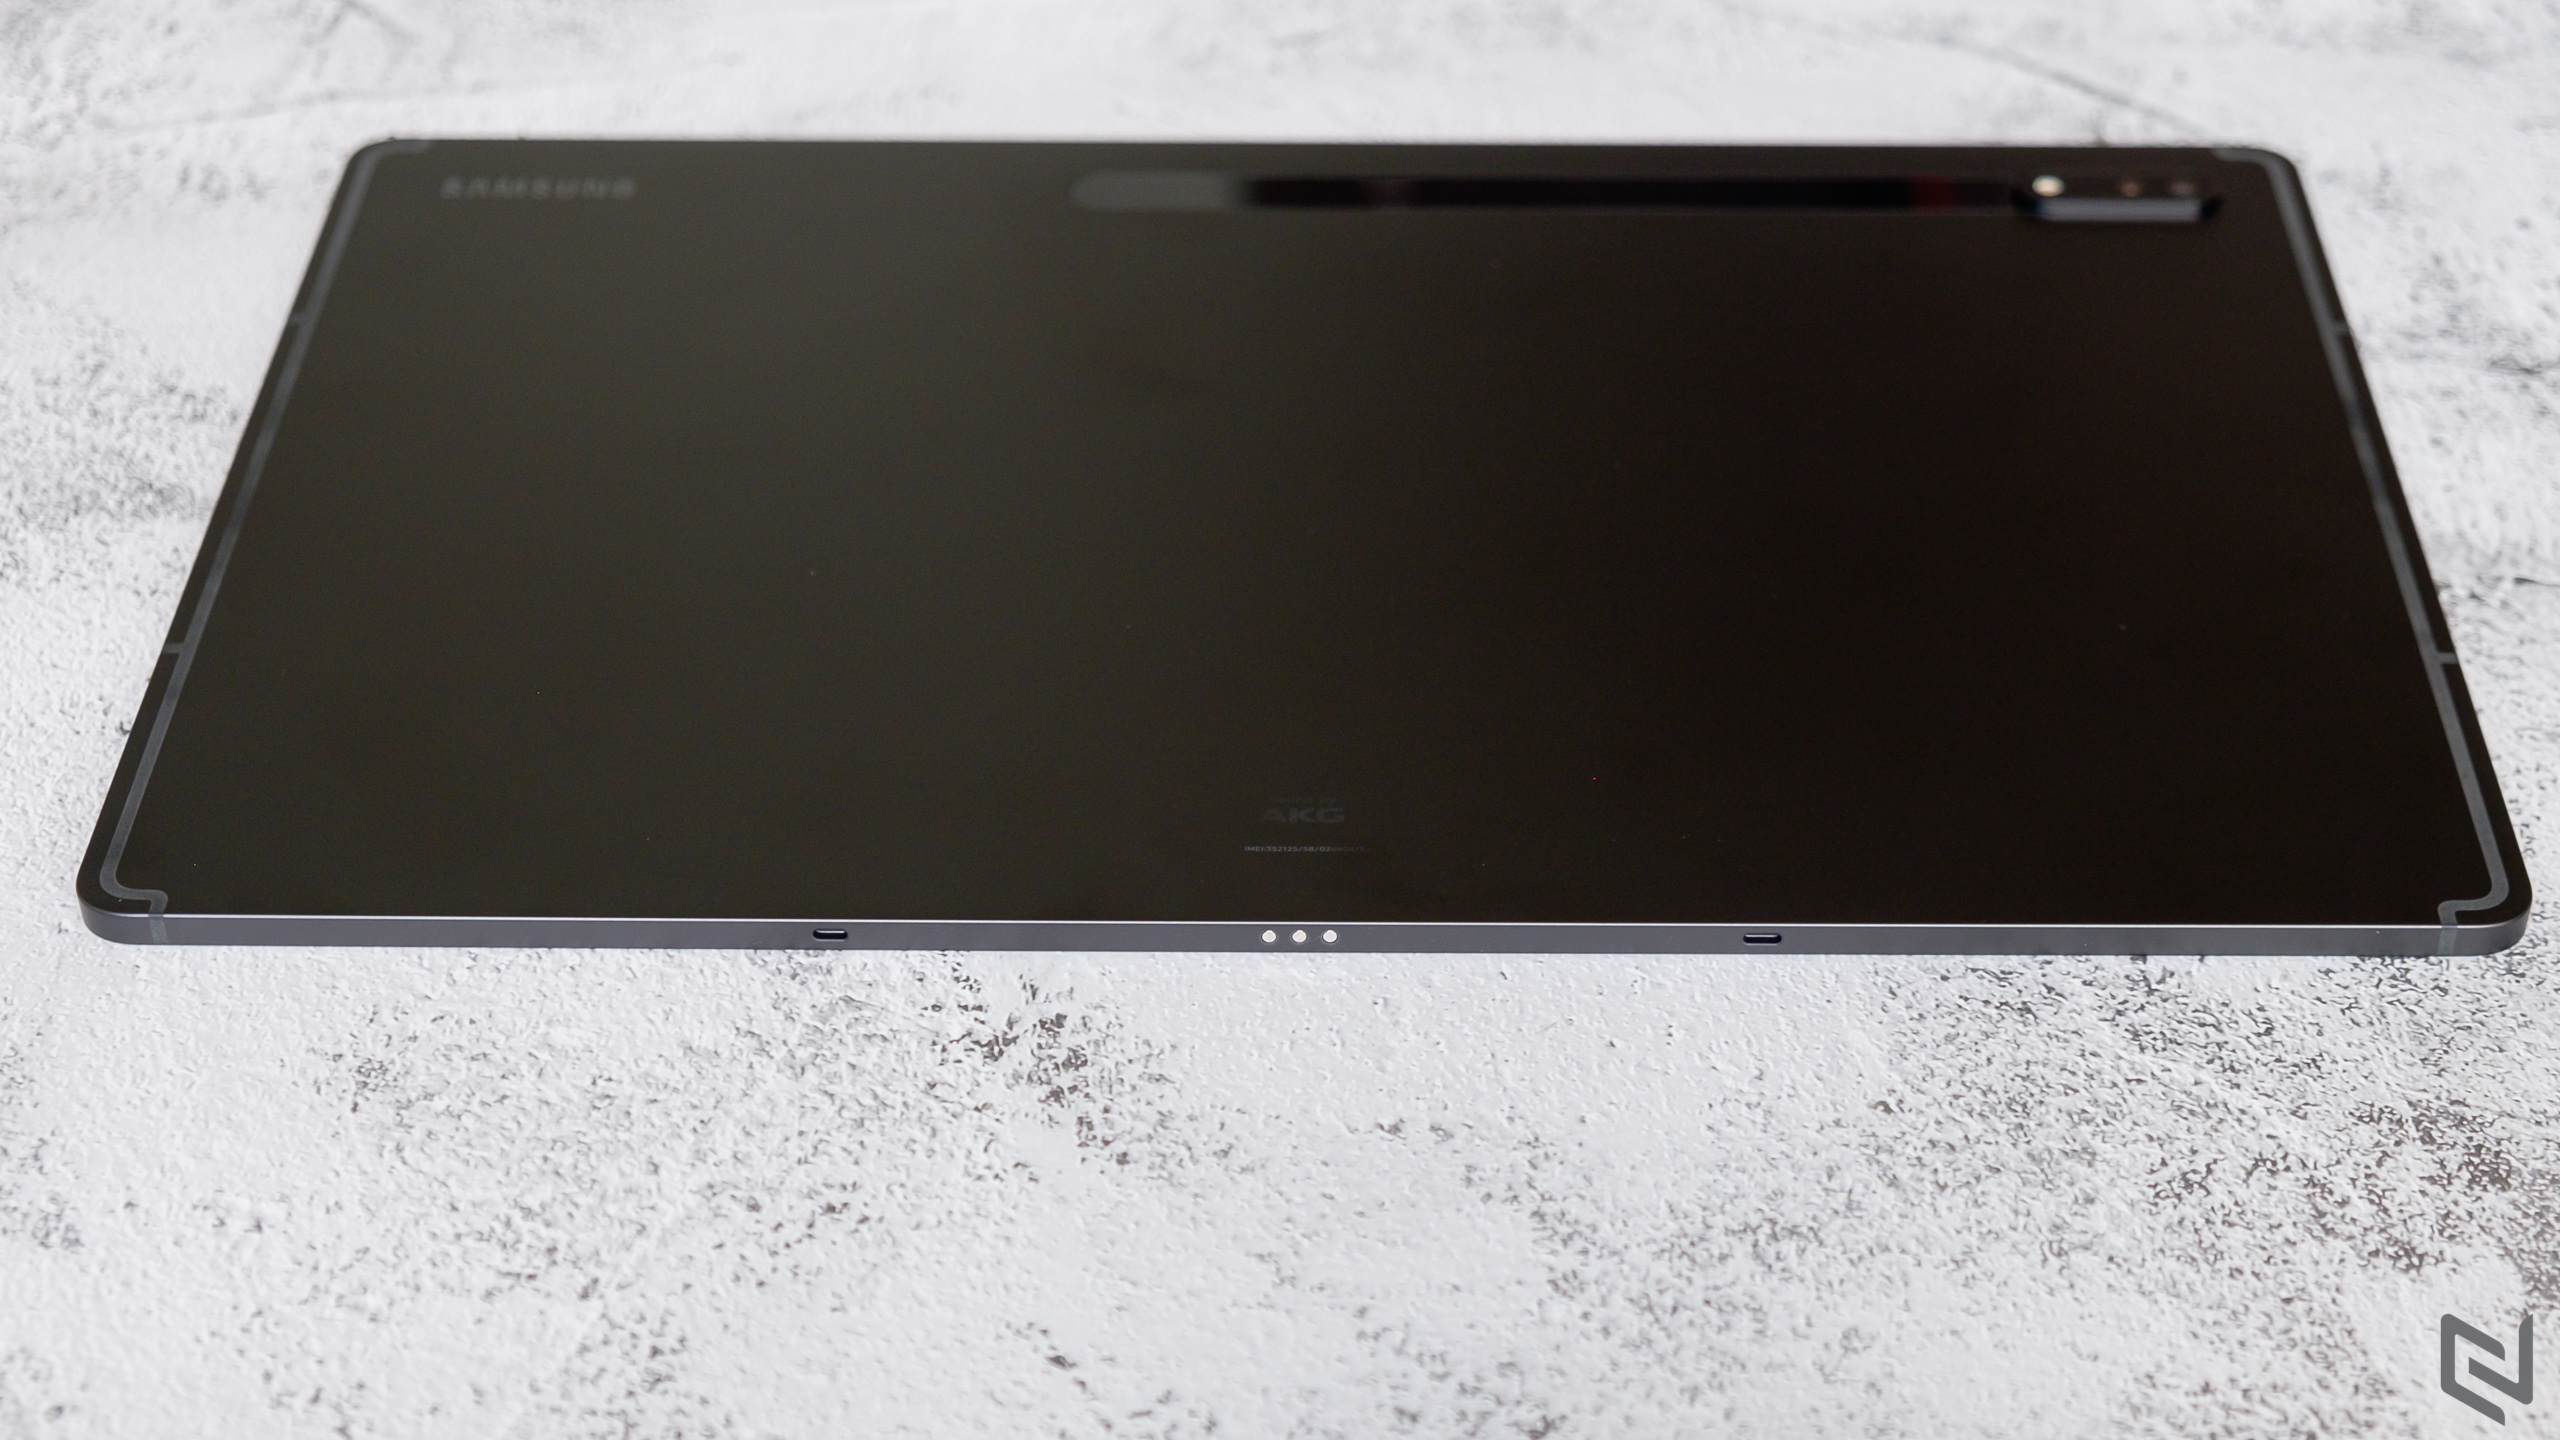 Khám phá máy tính bảng Galaxy Tab S8 Series mới nhất từ Samsung với loạt thông số và tính năng ấn tượng